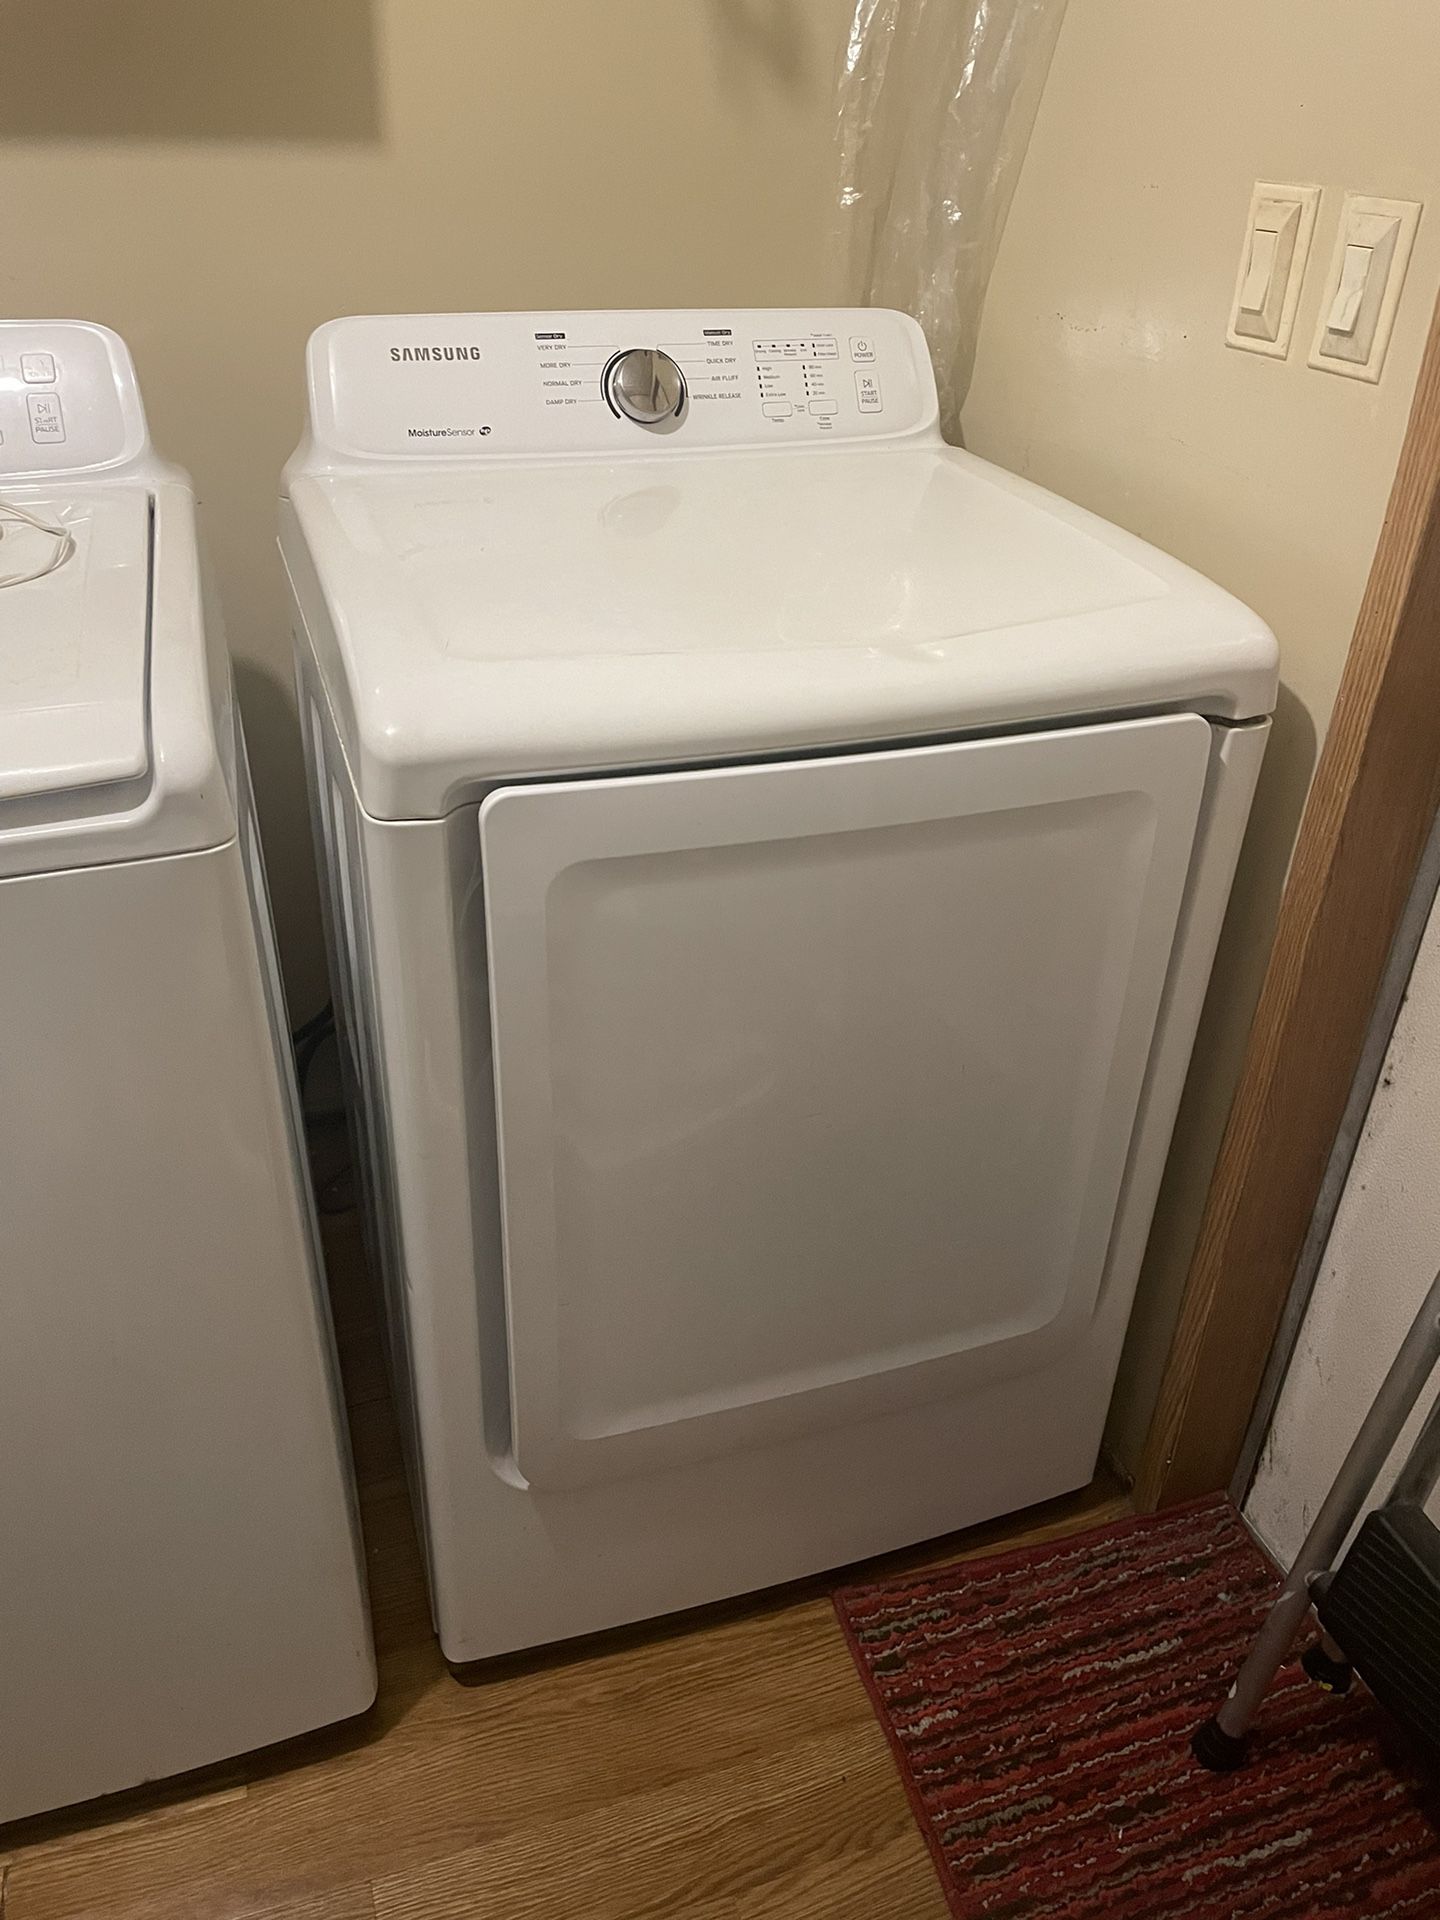 Samsung Front Load Dryer